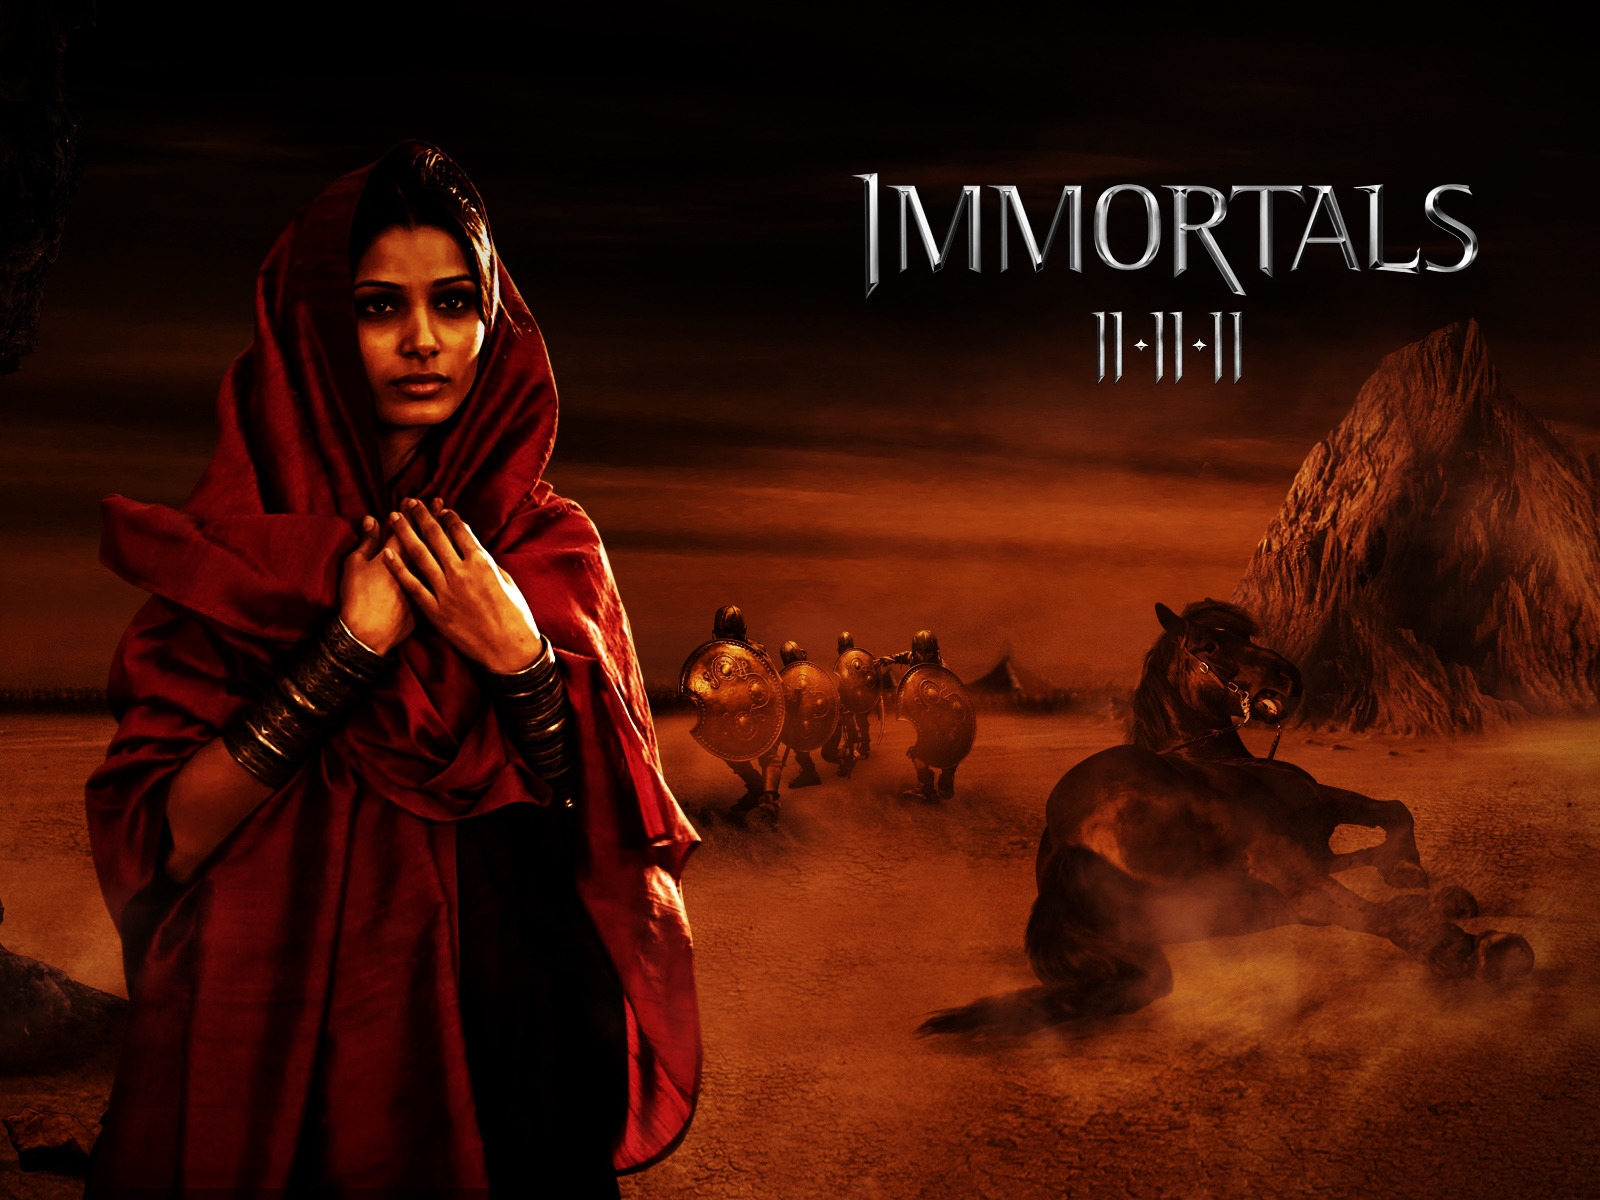 Immortals Movie Scene for 1600 x 1200 resolution